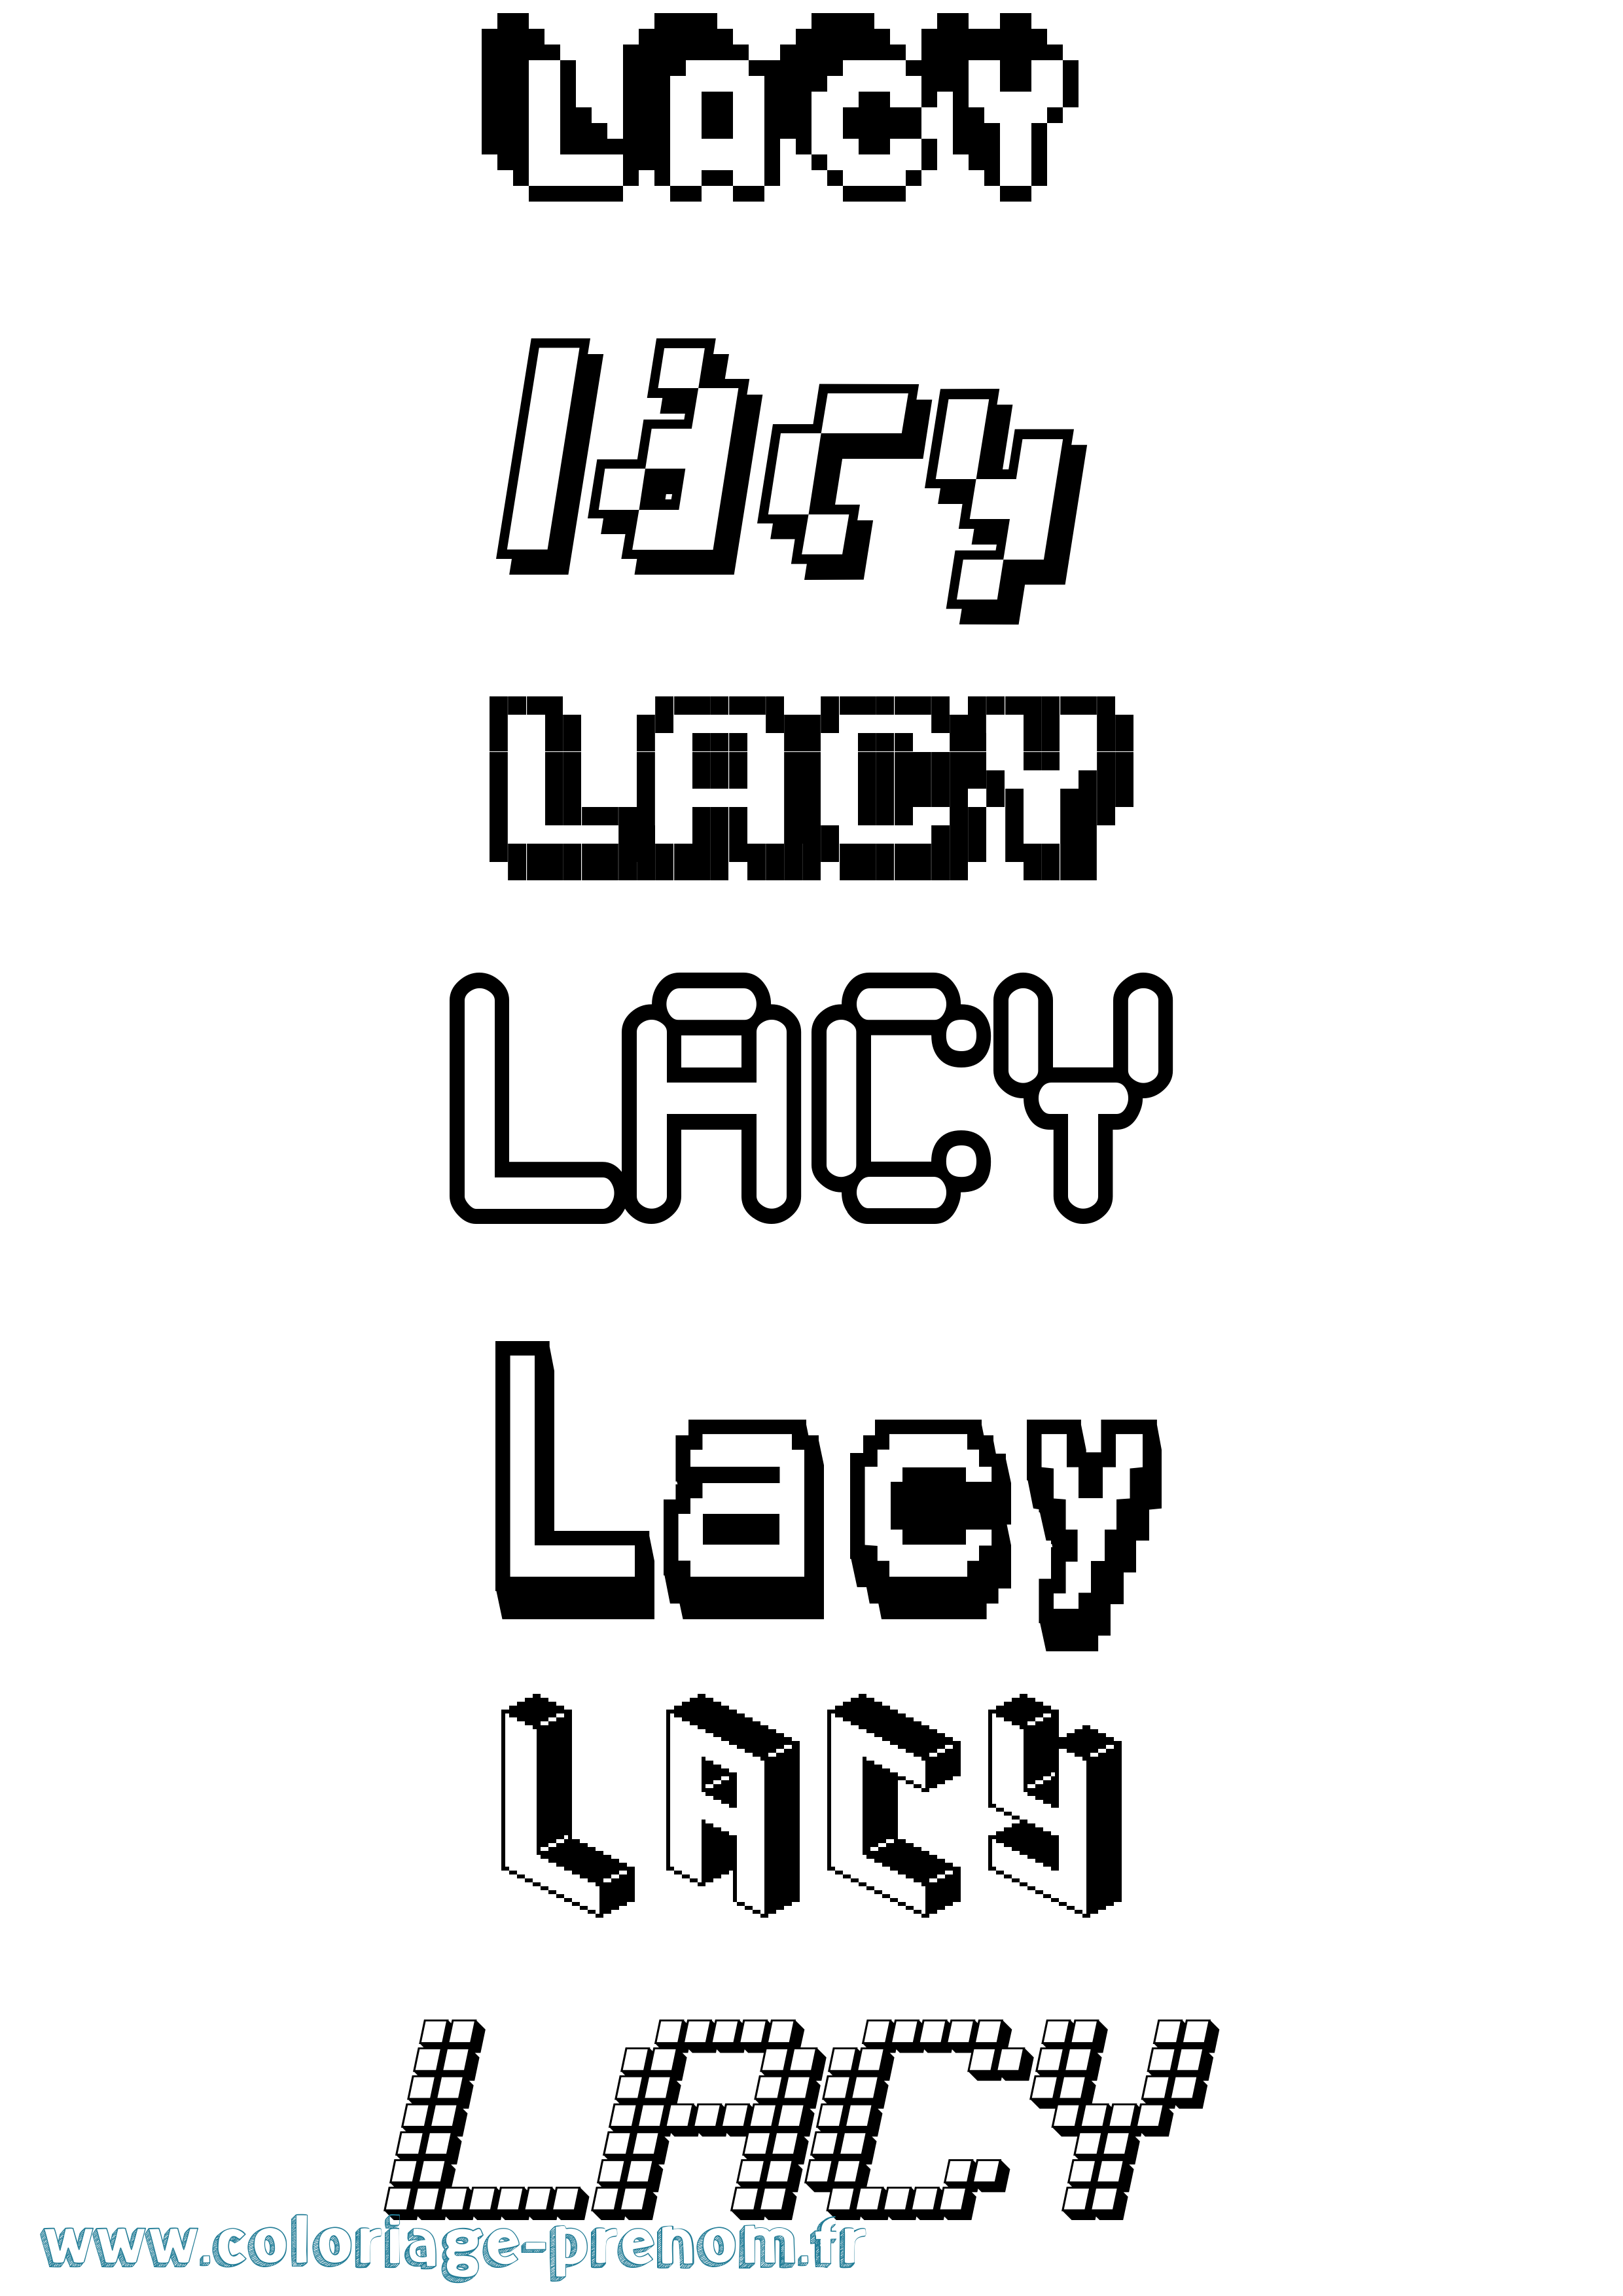 Coloriage prénom Lacy Pixel